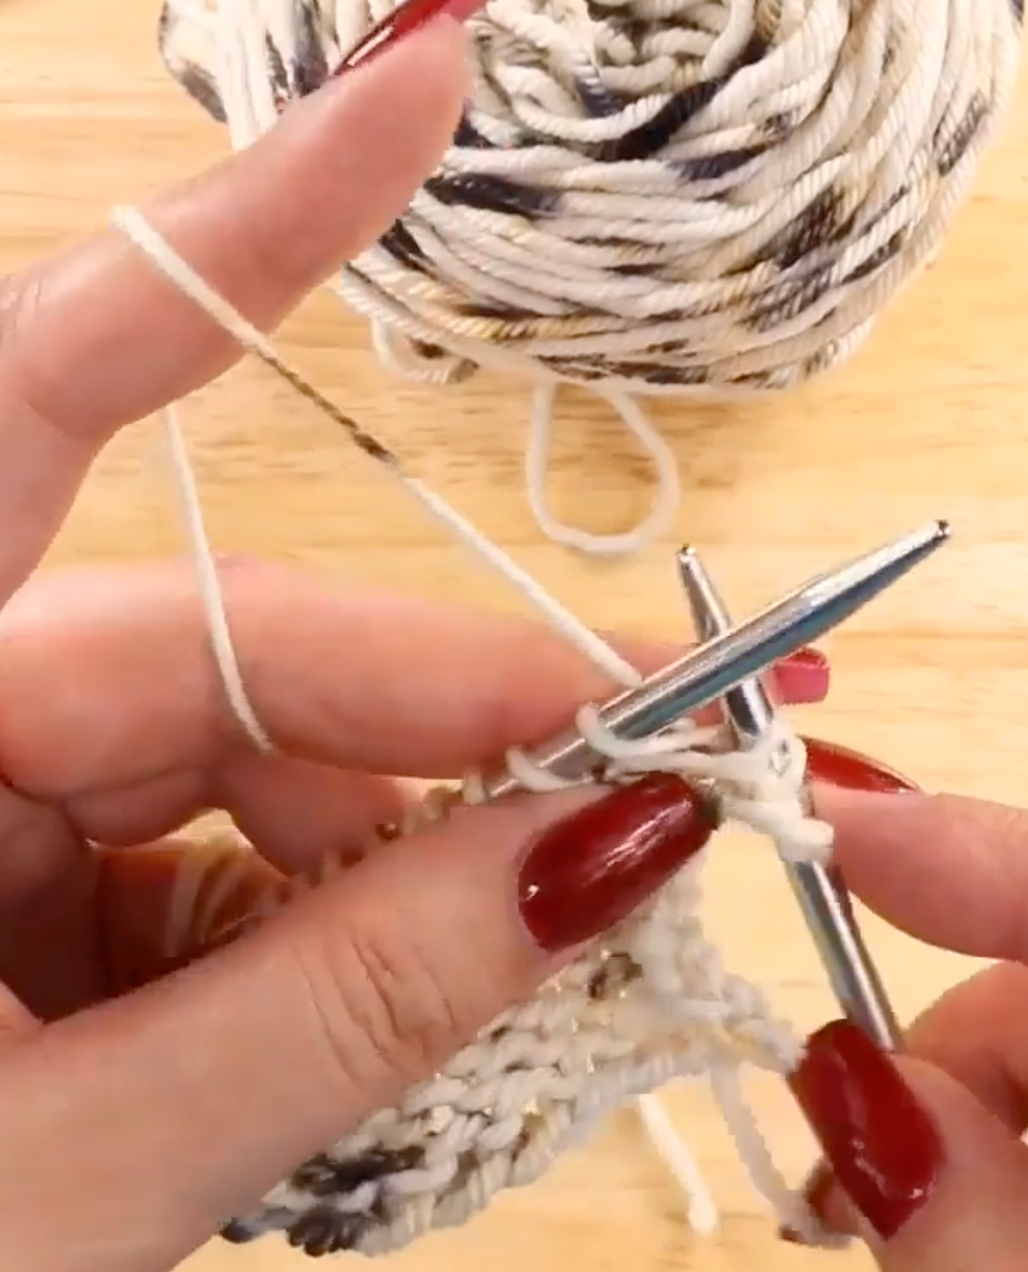 Double Lace Rib Stitch - Knitting Stitch Dictionary 